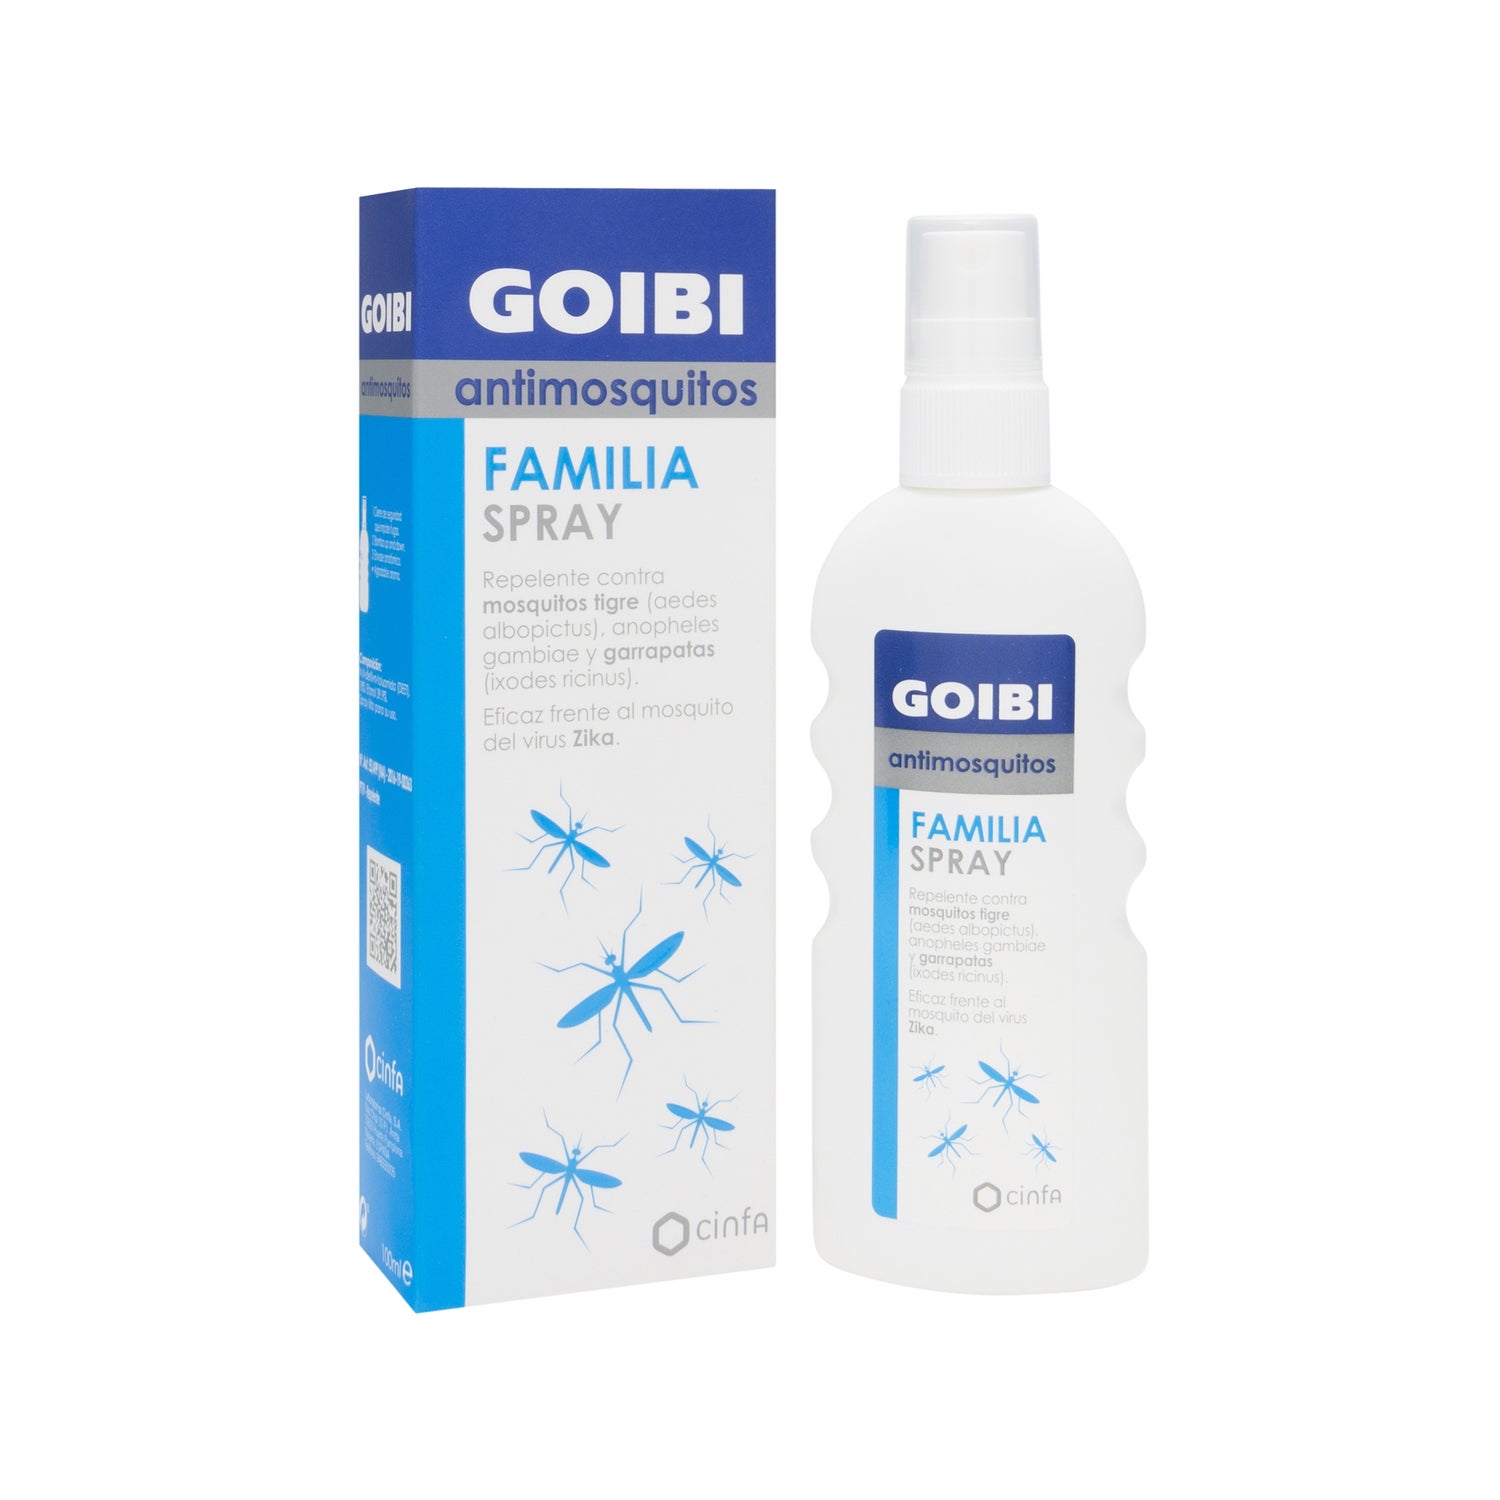 goibi repelente insectos spray para la familia 100ml